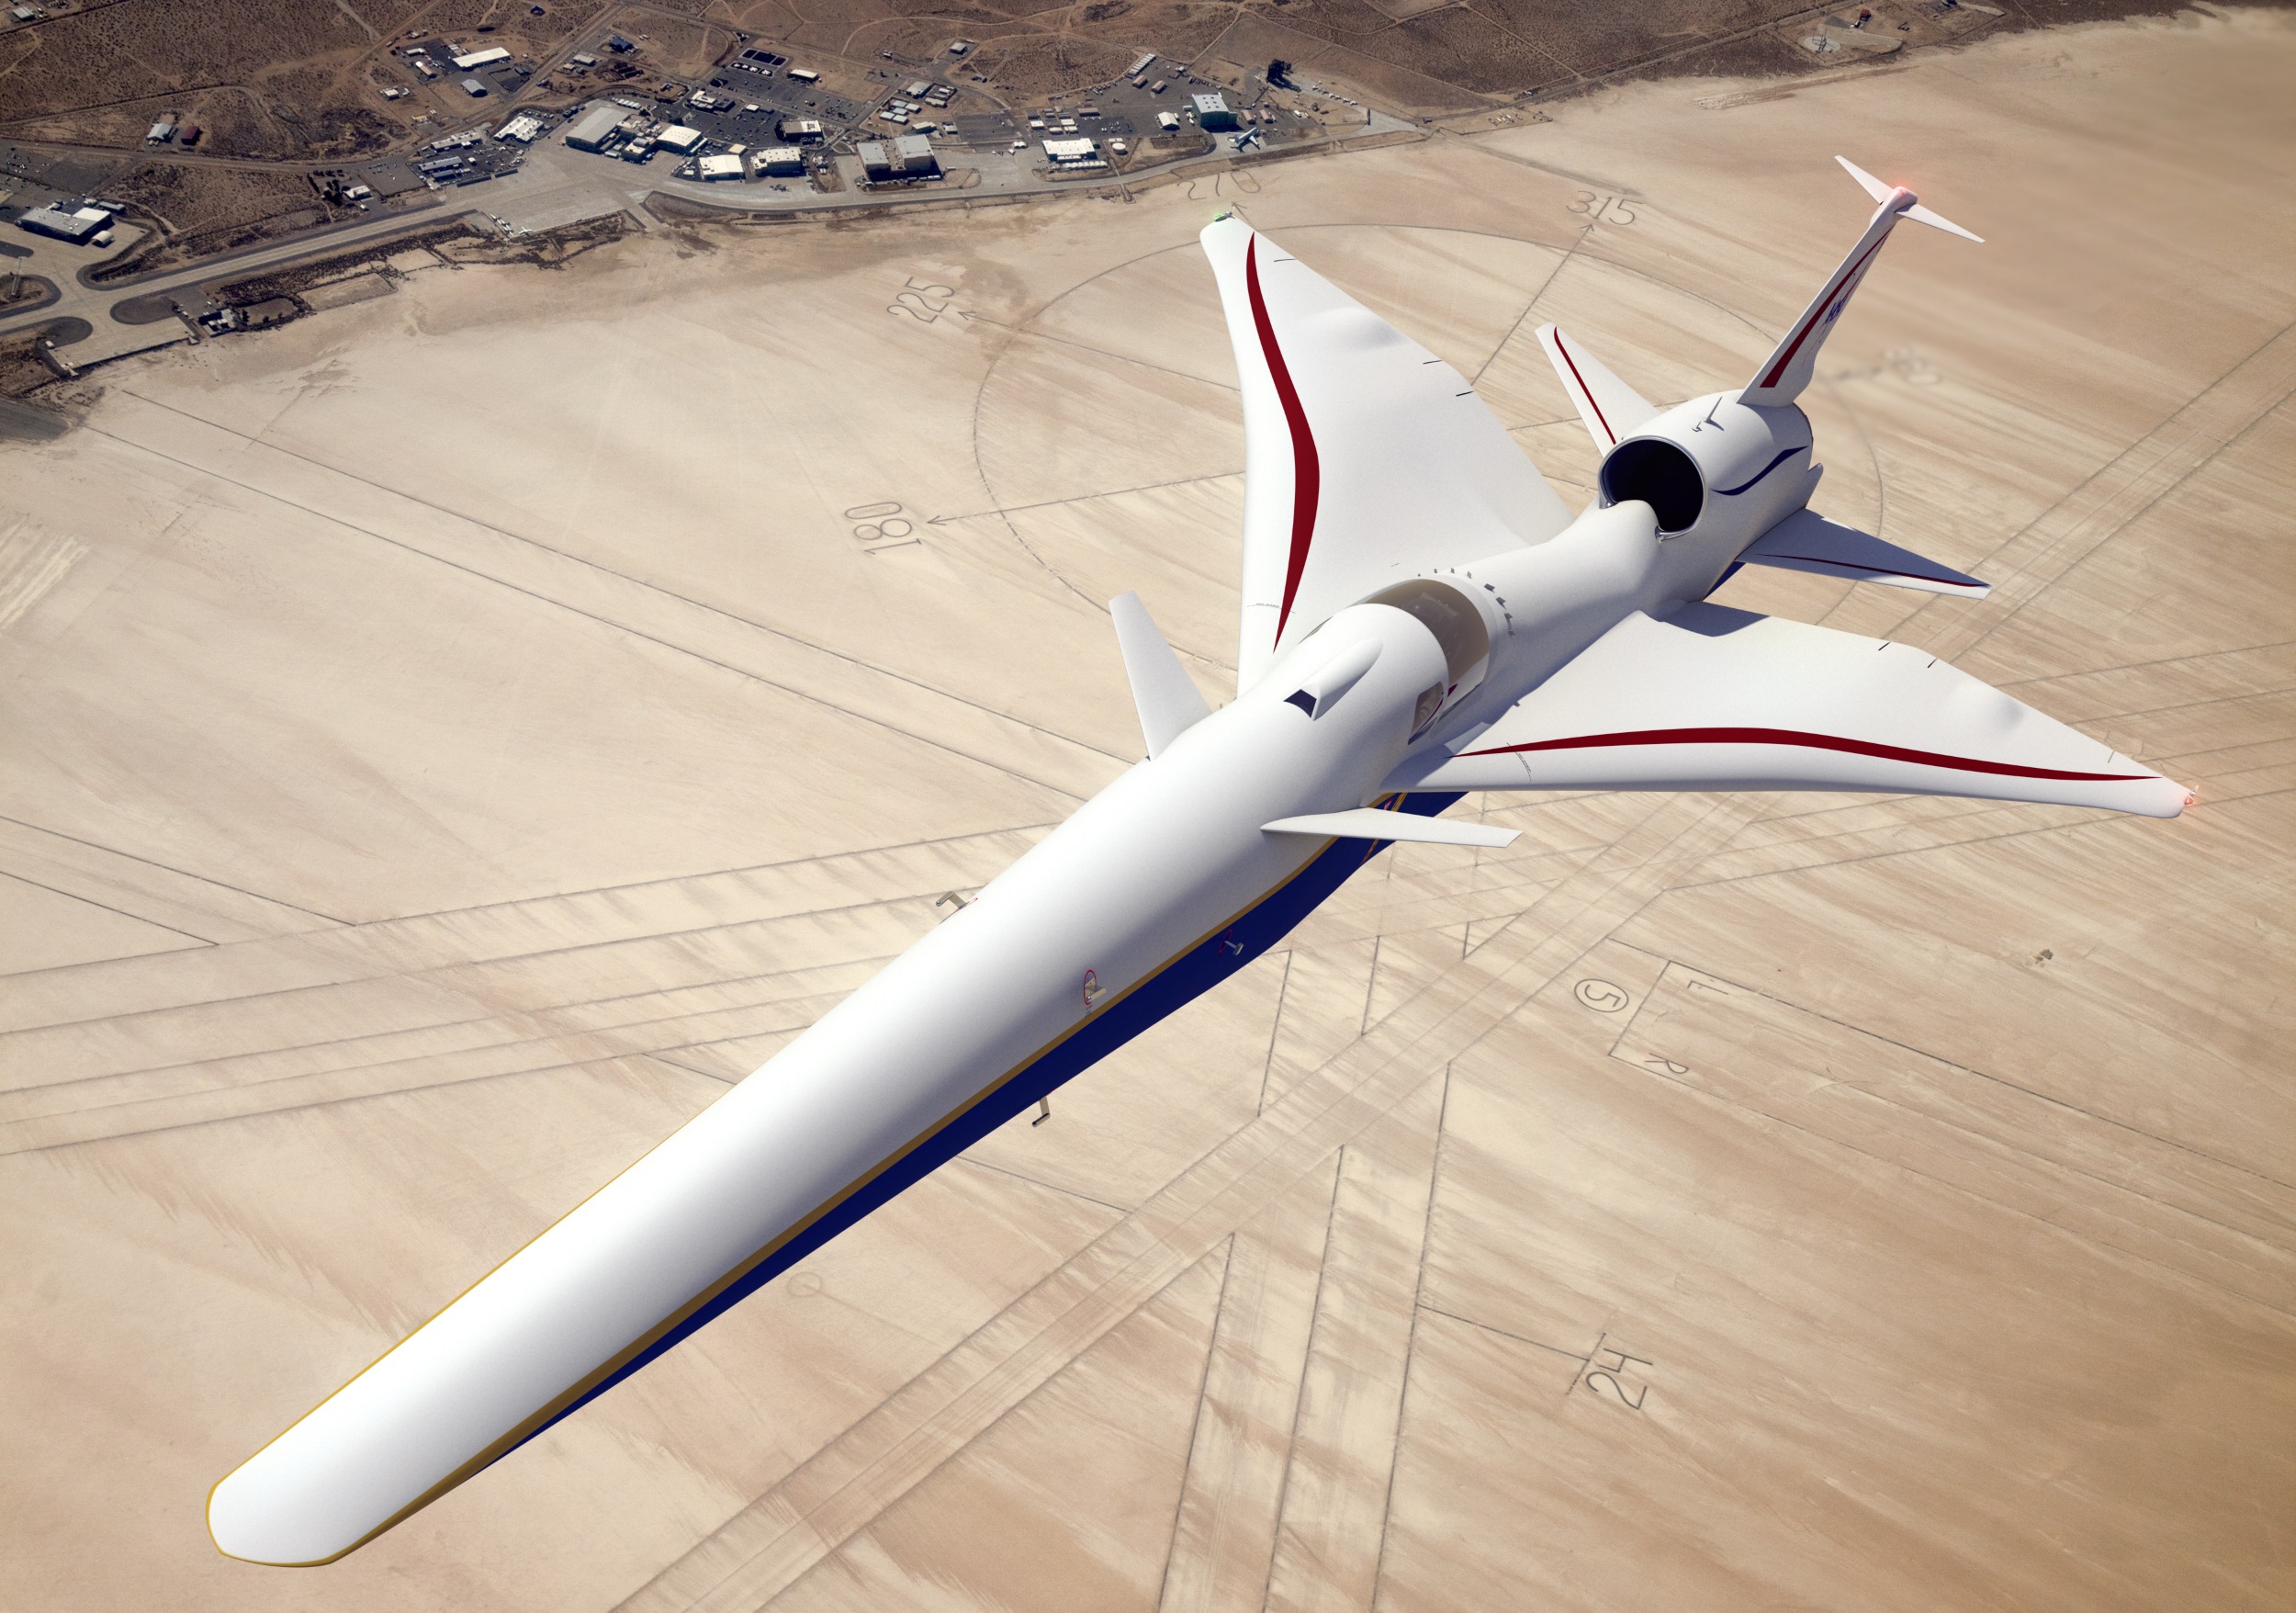 NASA X-59 süpersonik uçak kokpiti değişiyor